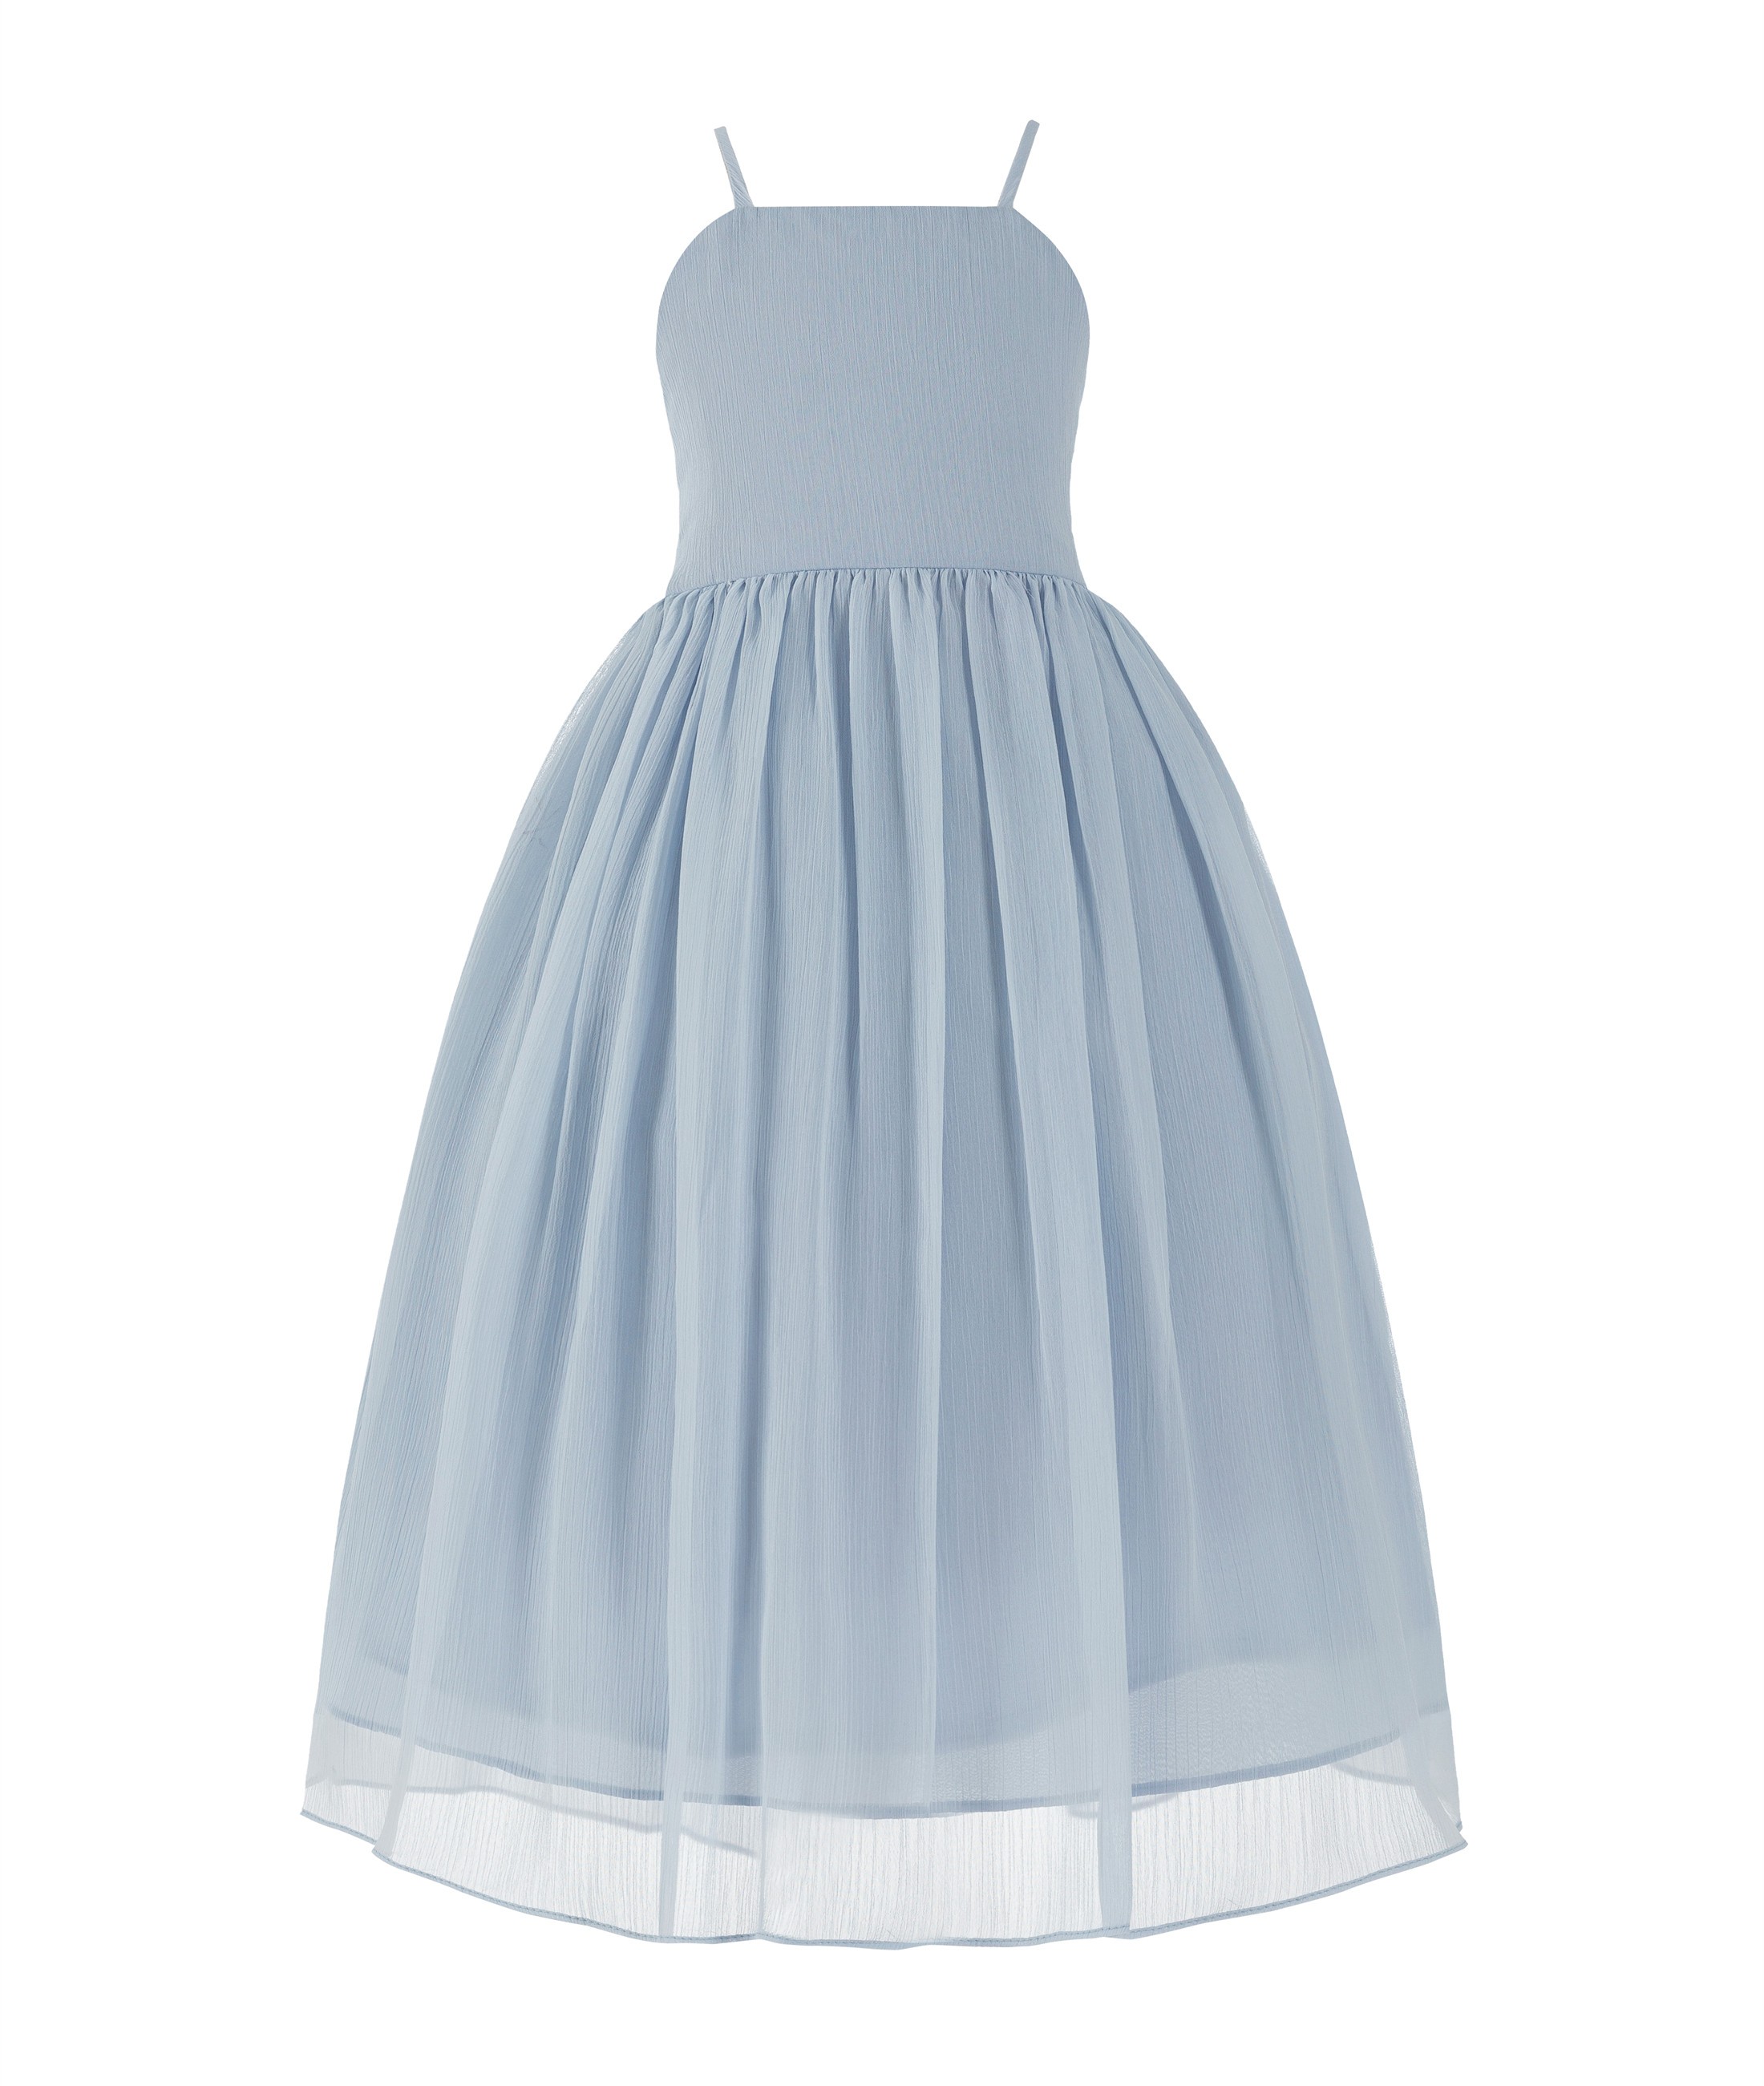 Dusty Blue Criss Cross Chiffon Flower Girl Dress Summer Dresses 191